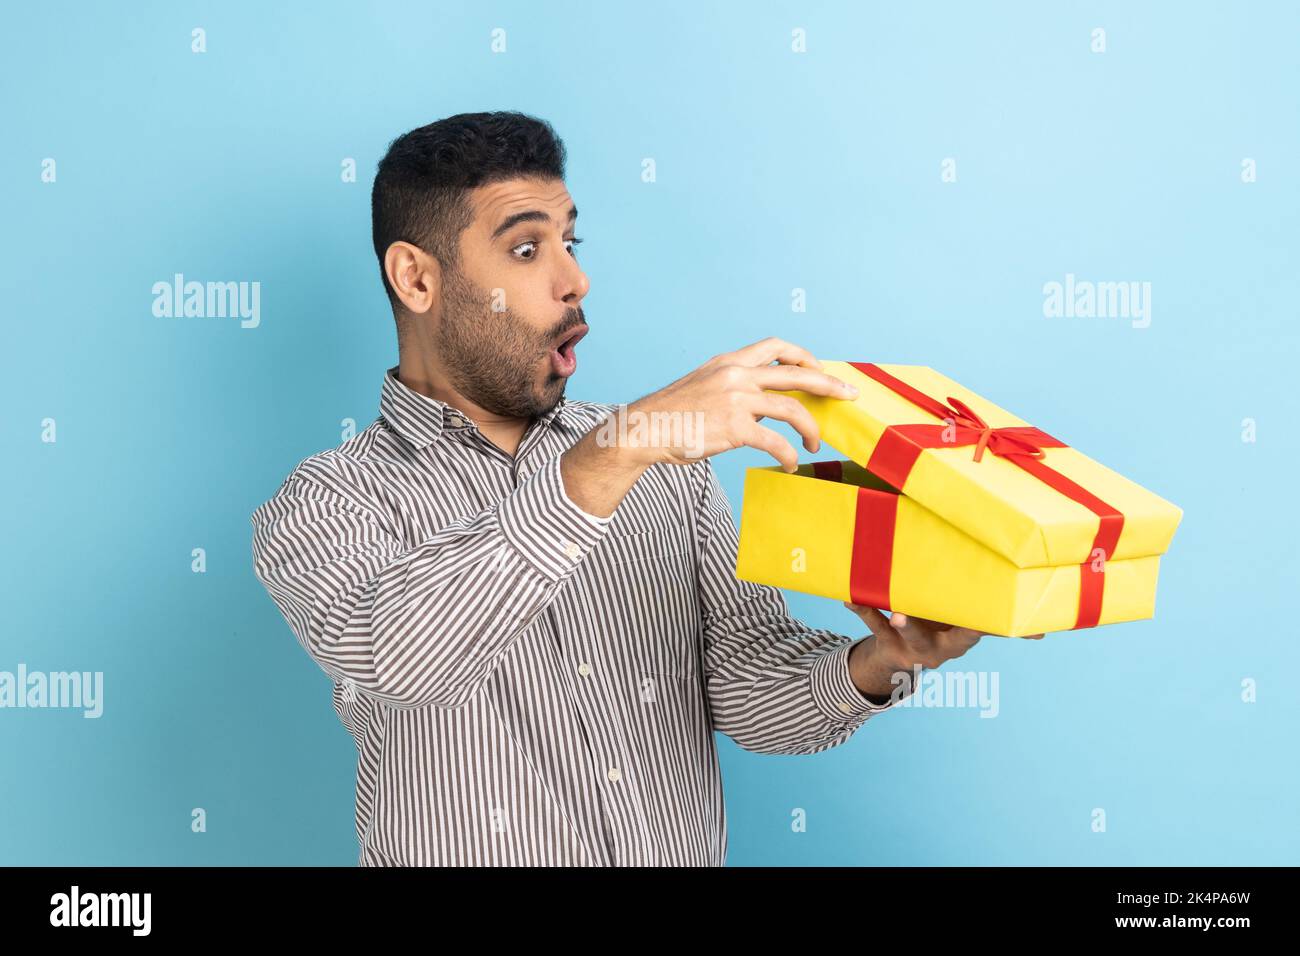 Porträt eines überraschten, neugierigen Geschäftsmannes, der in einer Geschenkschachtel schaut, das Geschenk öffnet und mit Interesse in das Innere blickt, in einem gestreiften Hemd. Innenaufnahme des Studios isoliert auf blauem Hintergrund. Stockfoto